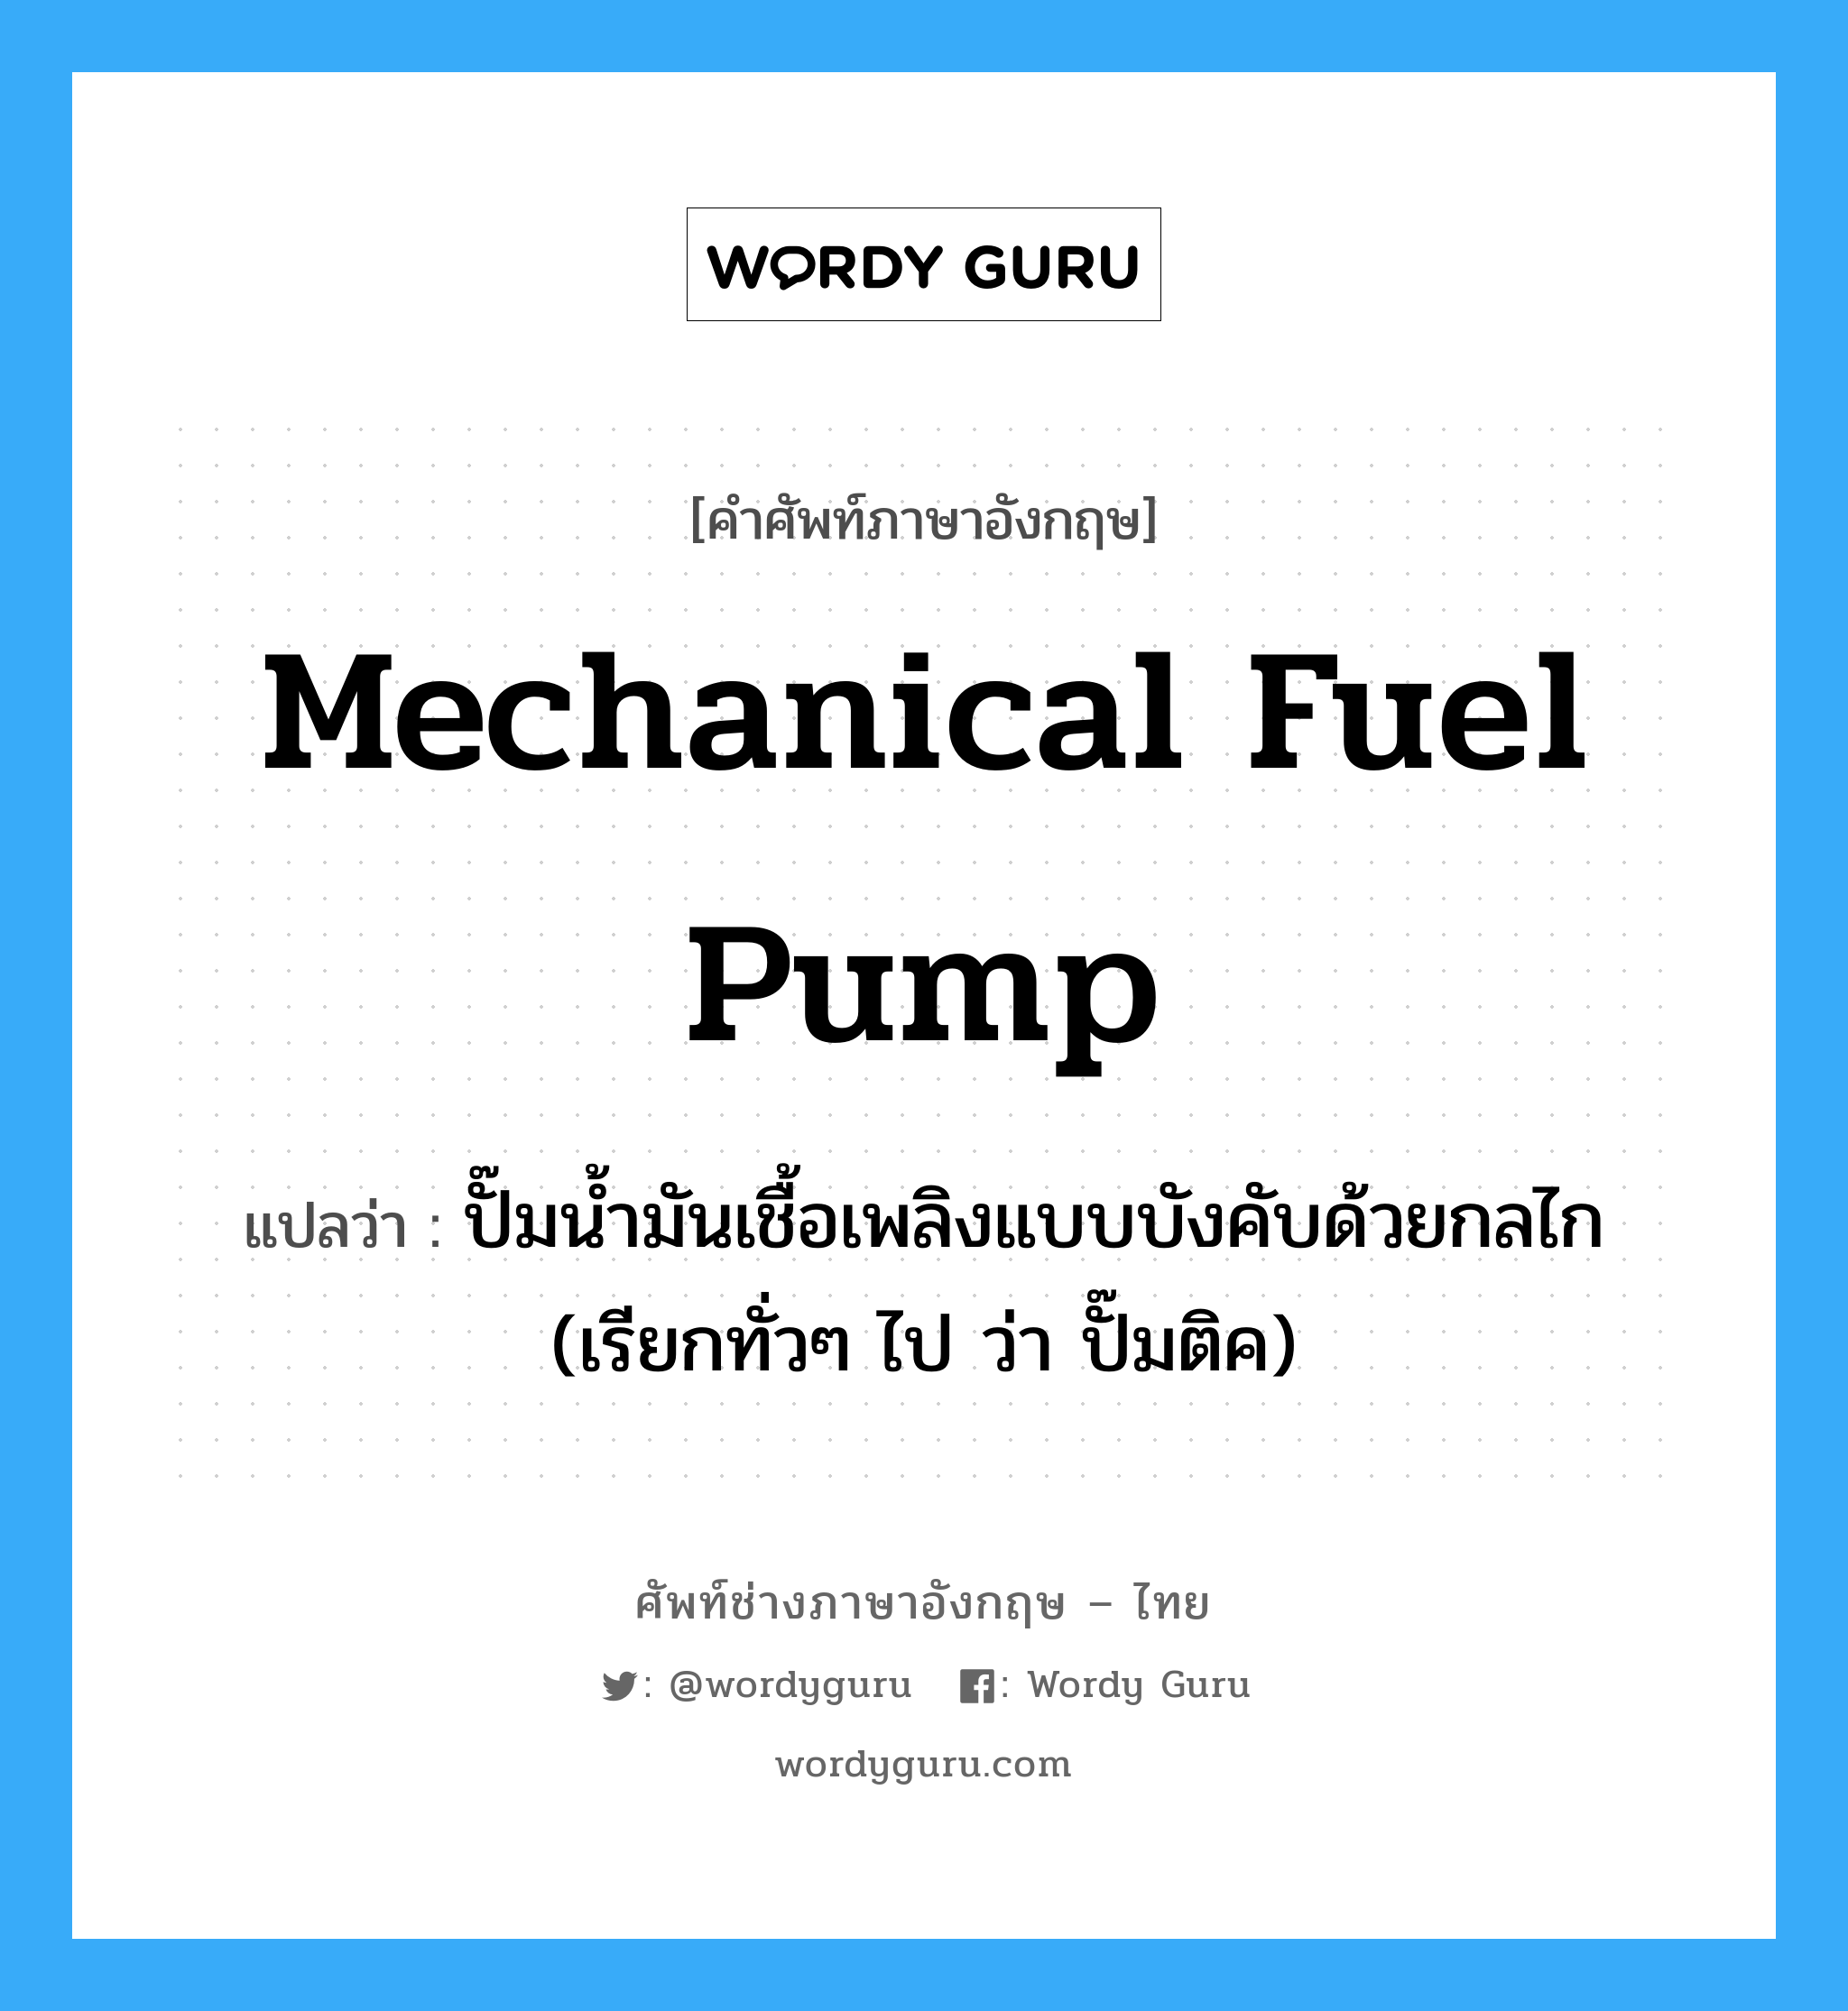 mechanical fuel pump แปลว่า?, คำศัพท์ช่างภาษาอังกฤษ - ไทย mechanical fuel pump คำศัพท์ภาษาอังกฤษ mechanical fuel pump แปลว่า ปั๊มน้ำมันเชื้อเพลิงแบบบังคับด้วยกลไก (เรียกทั่วๆ ไป ว่า ปั๊มติค)